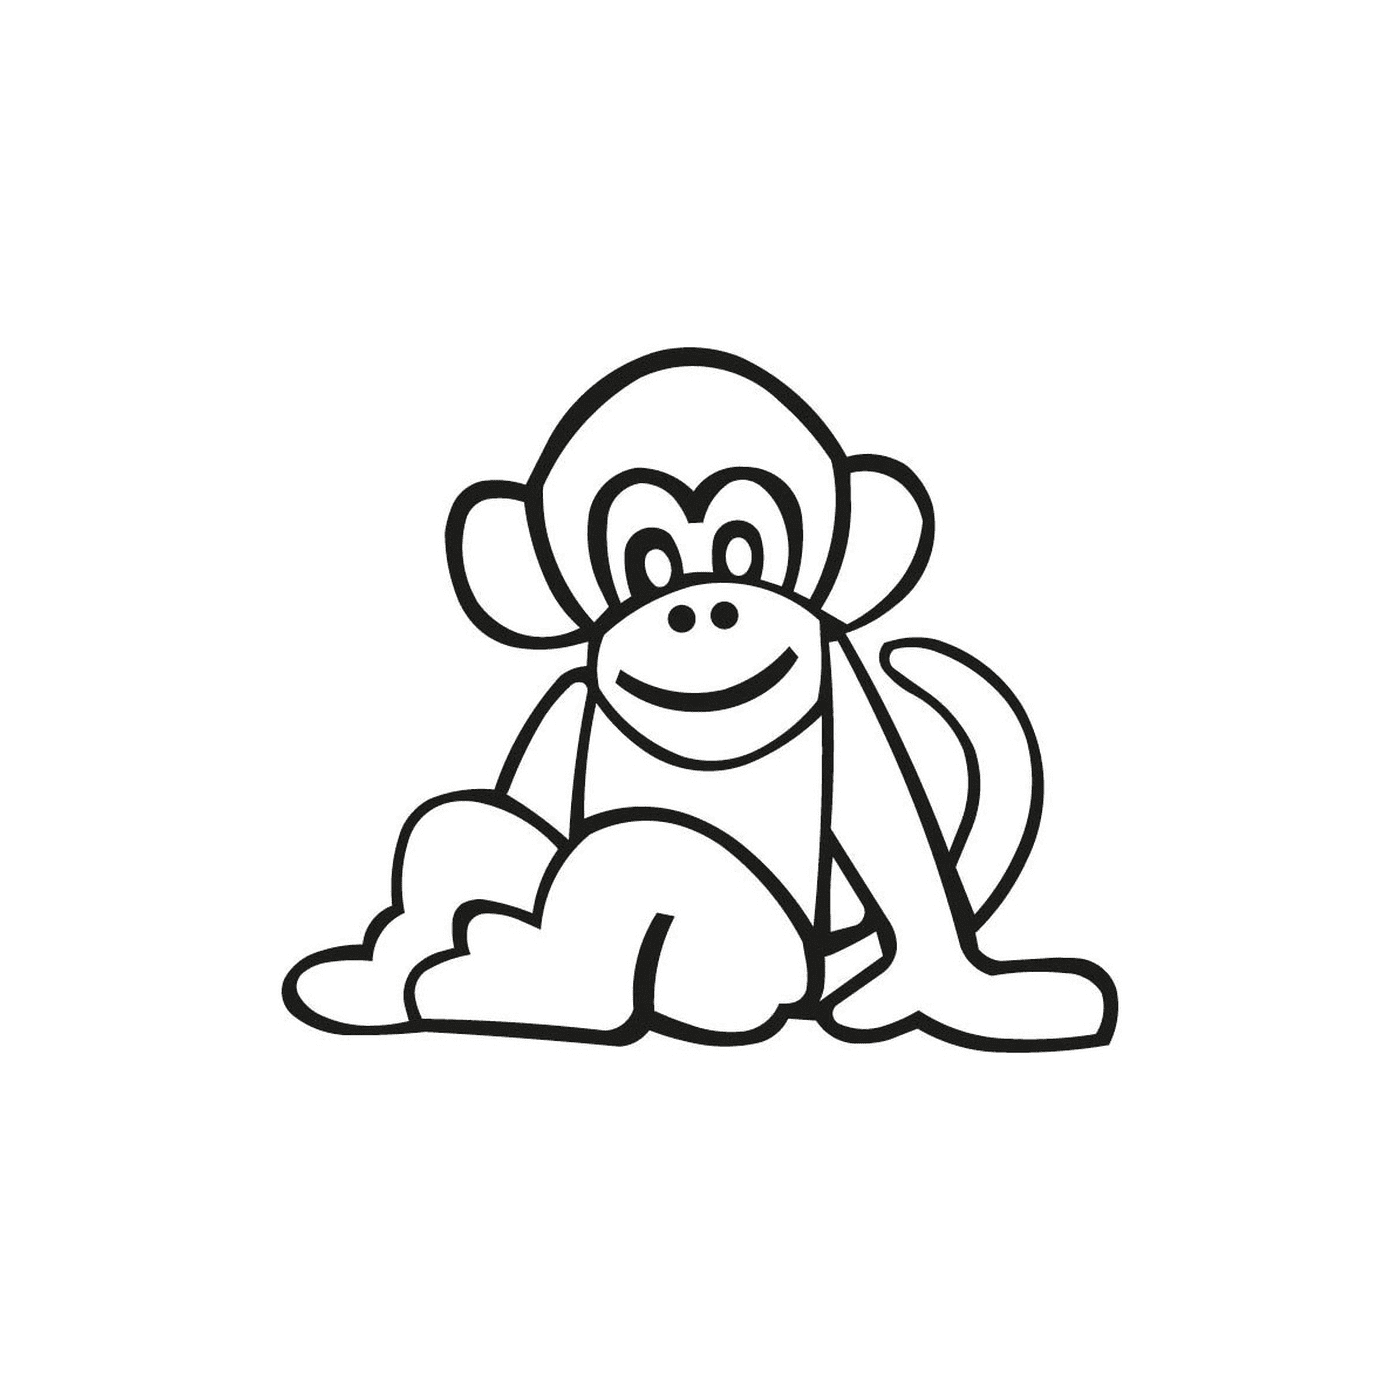  猴子很容易画画 